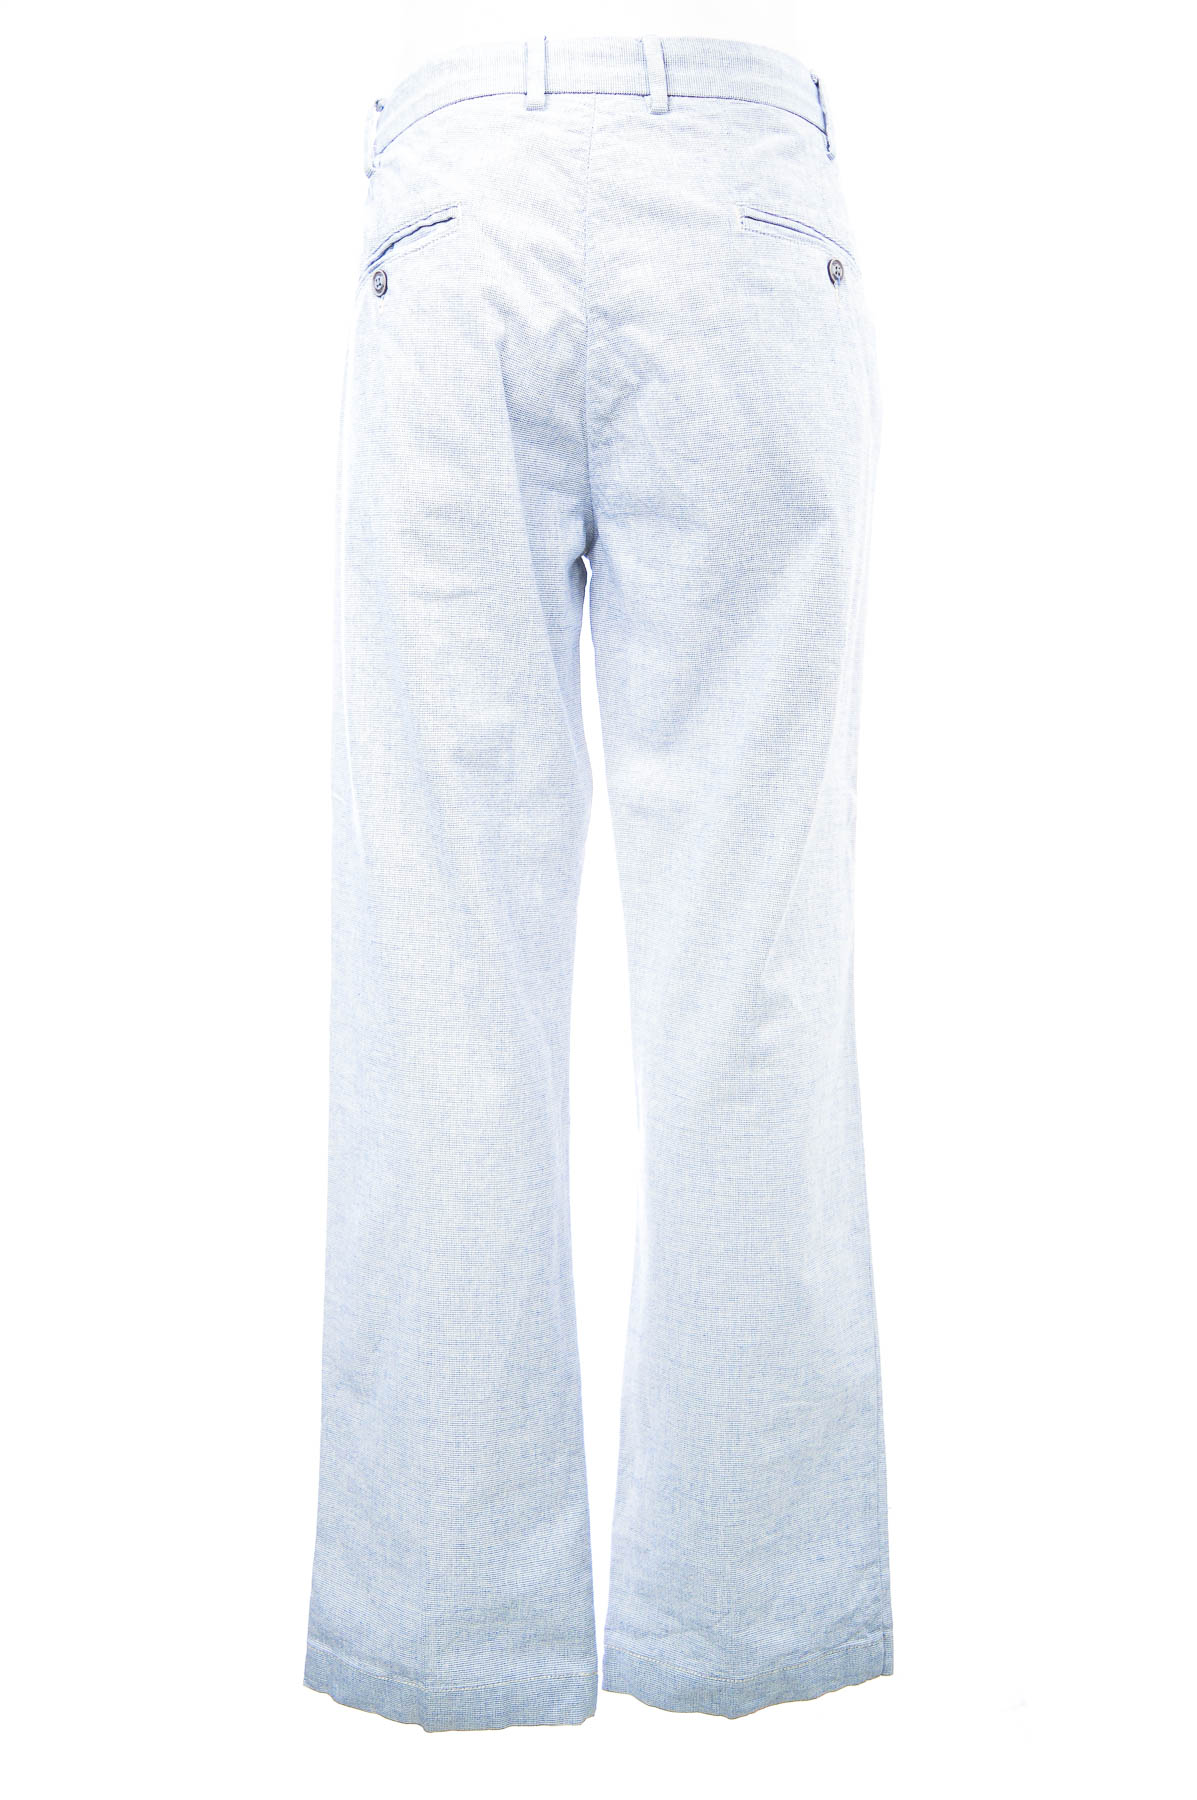 Men's trousers - Conbipel - 1